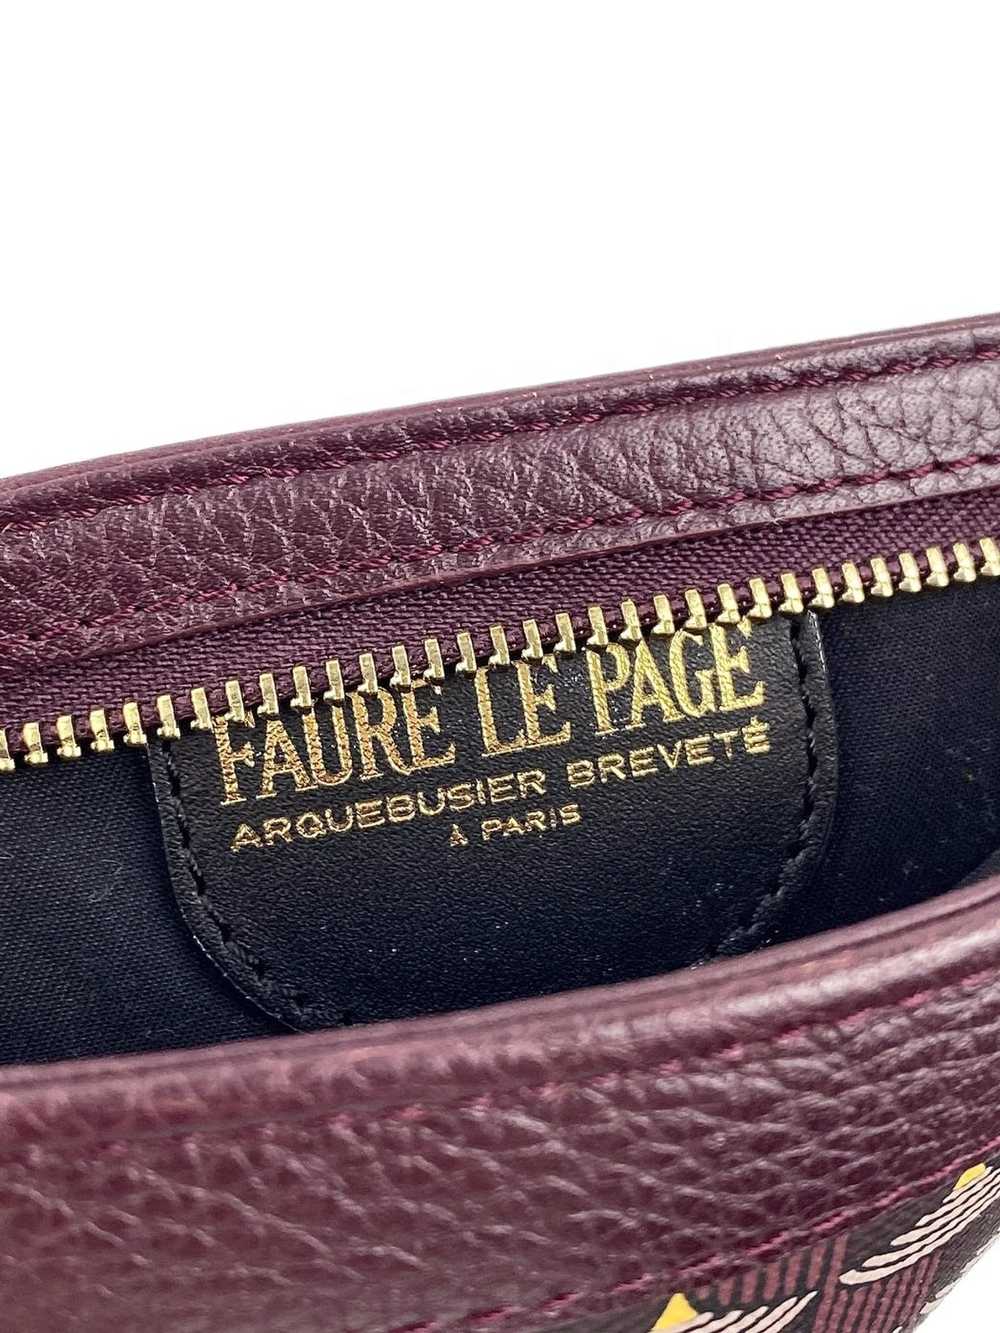 Fauré Le Page - Etendard 4cc Card Holder - Paris Blue Scale Canvas & Navy Leather